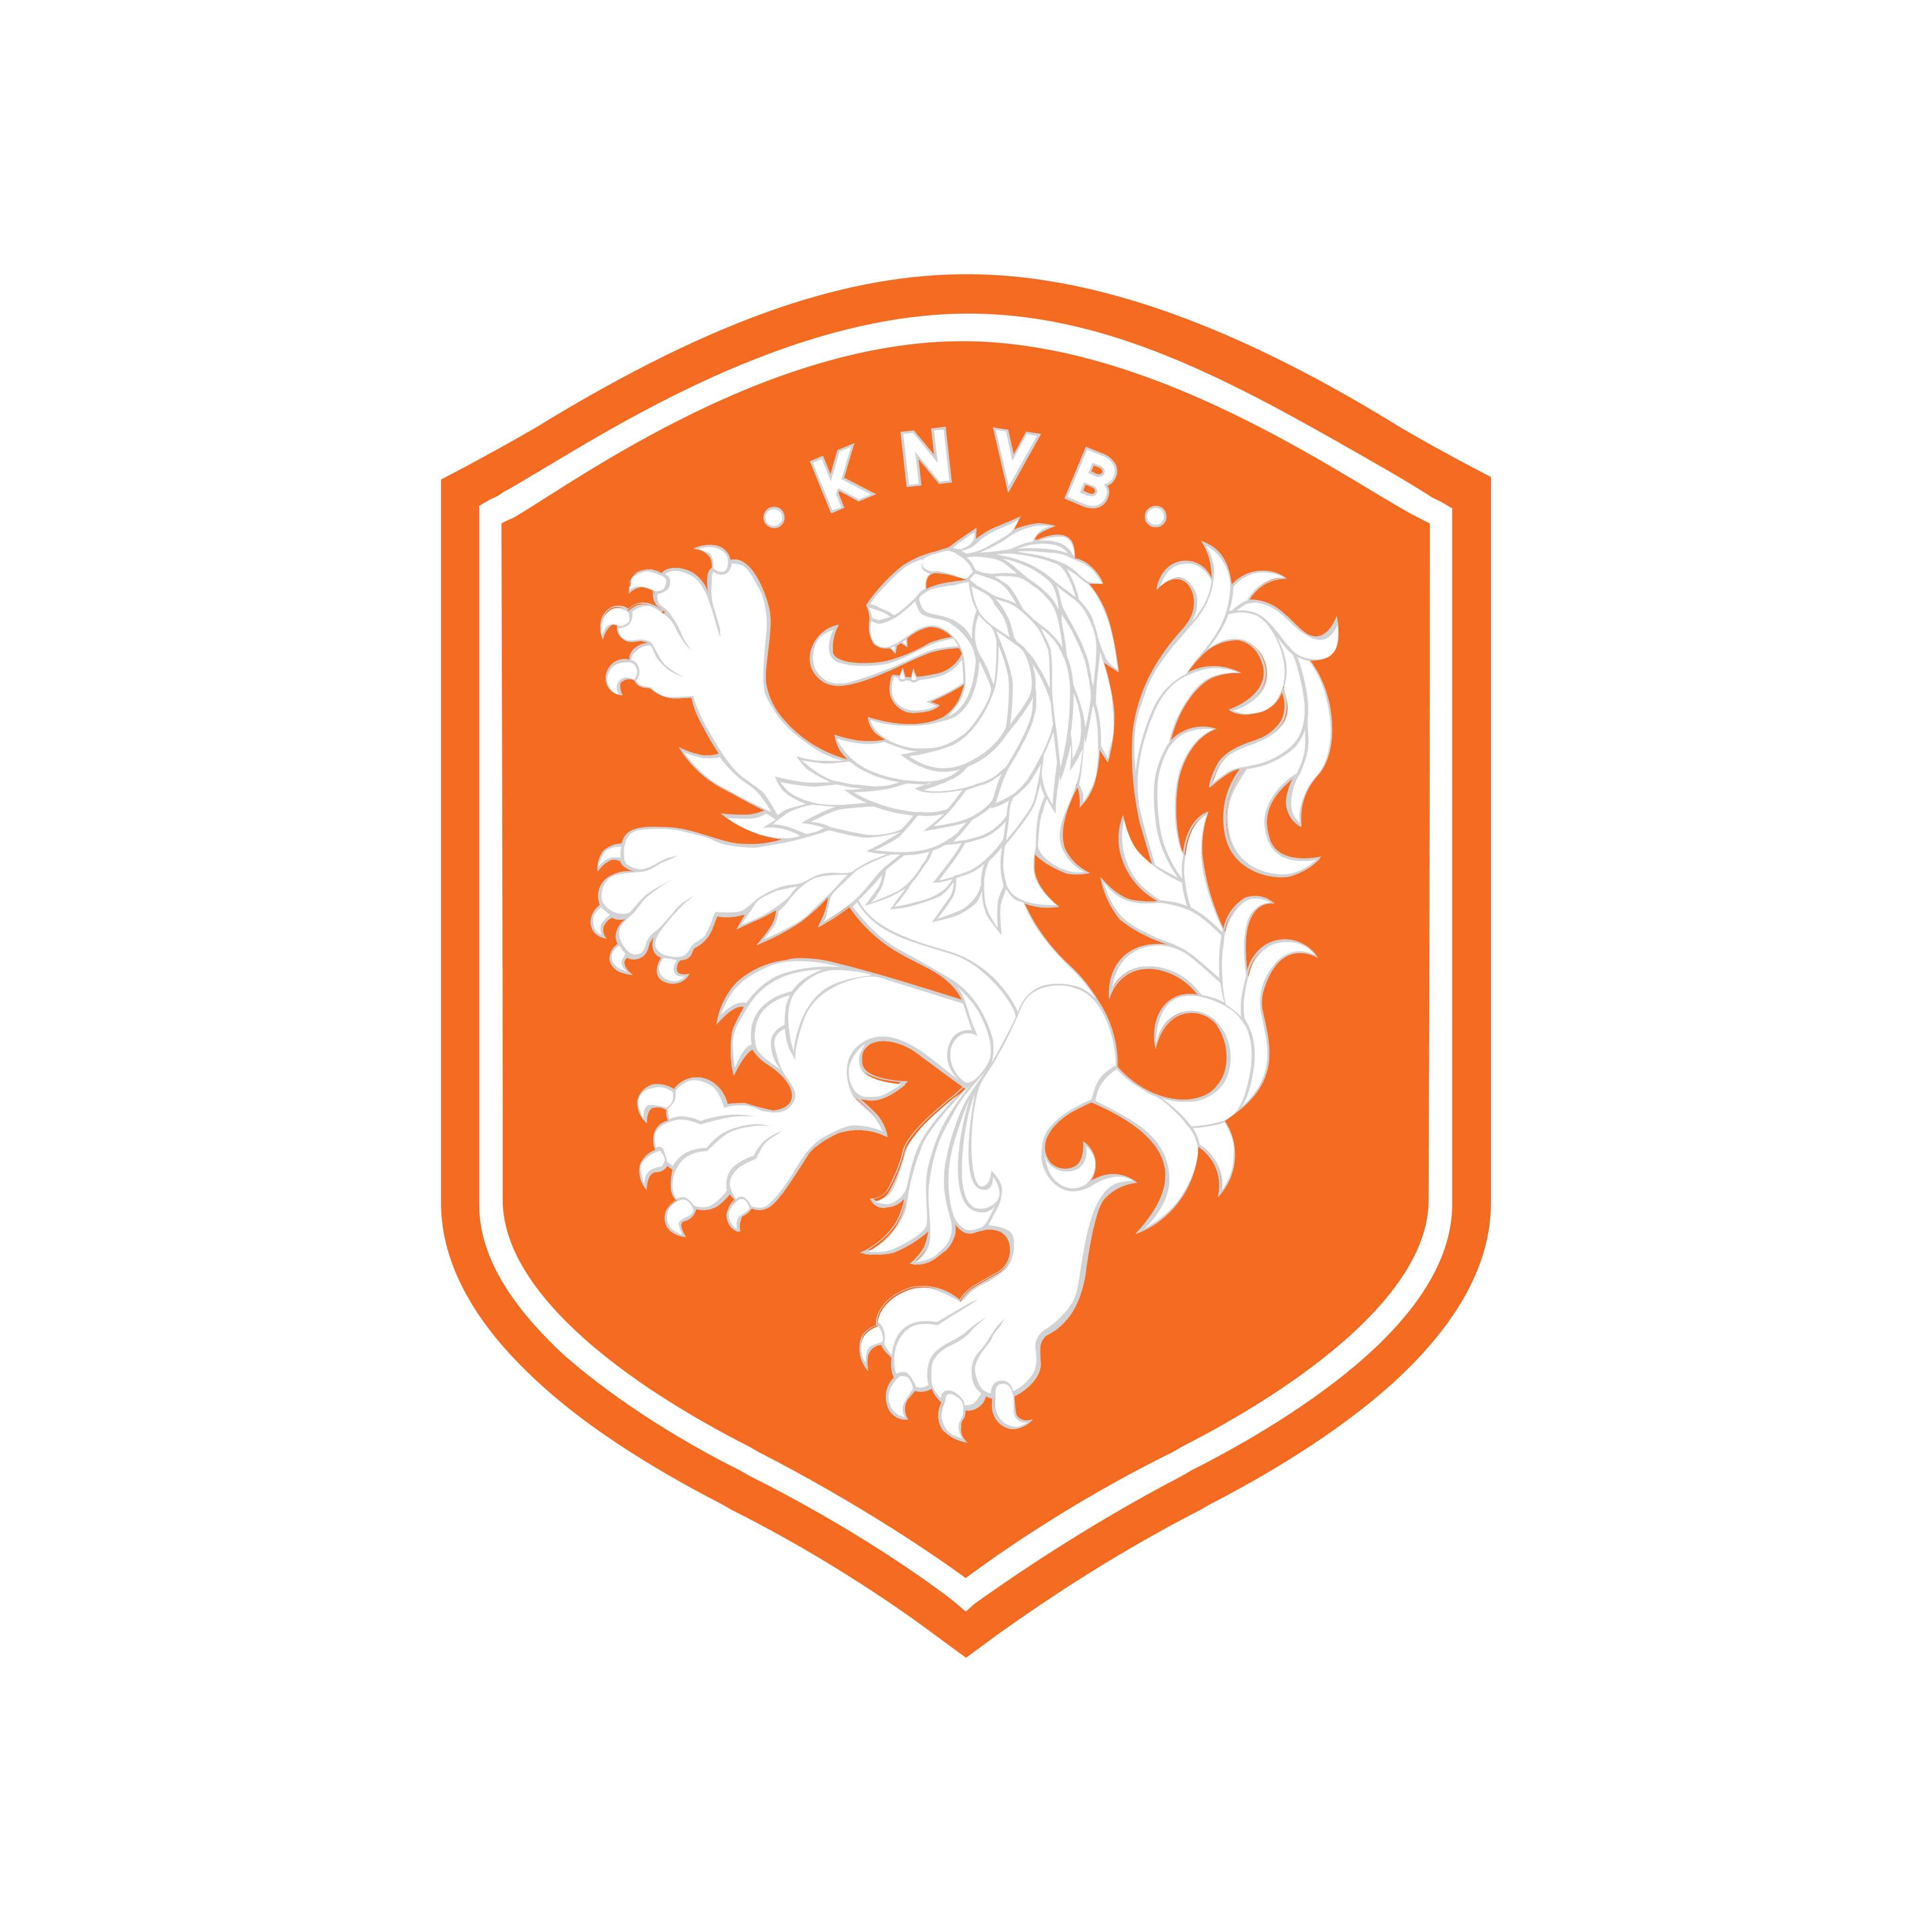 holanda netherlands football team logo 0 - KNVB - Équipe des Pays-Bas de Football Logo